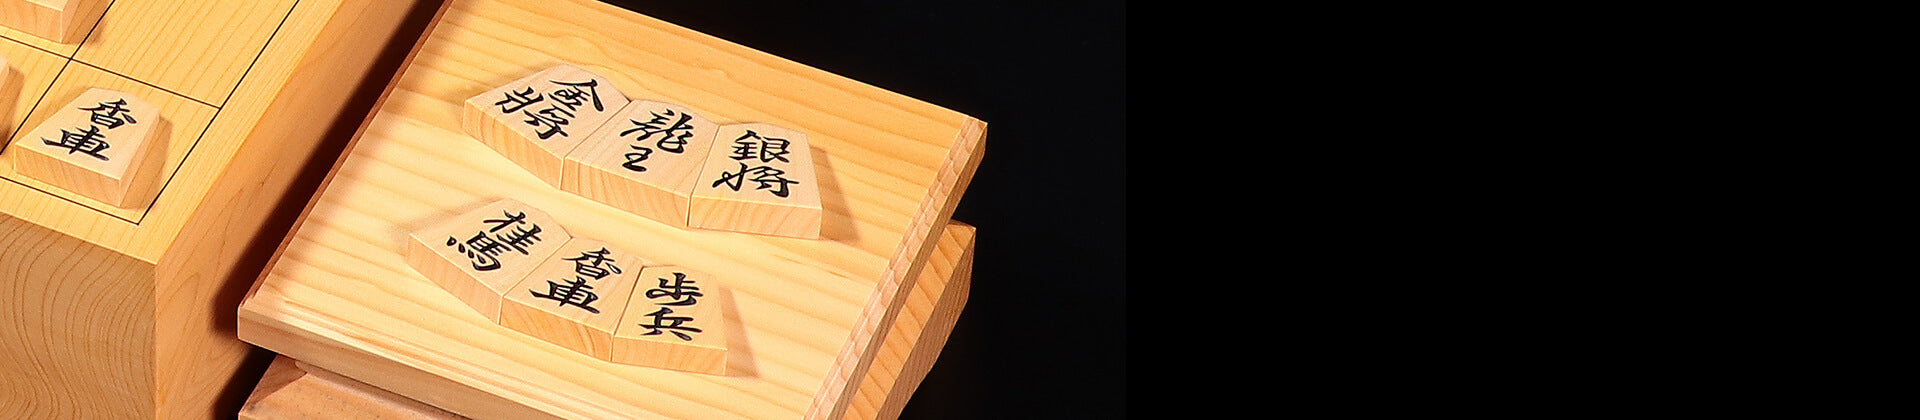 How to Select a Shogi Piece Stand and Shogi Piece Box